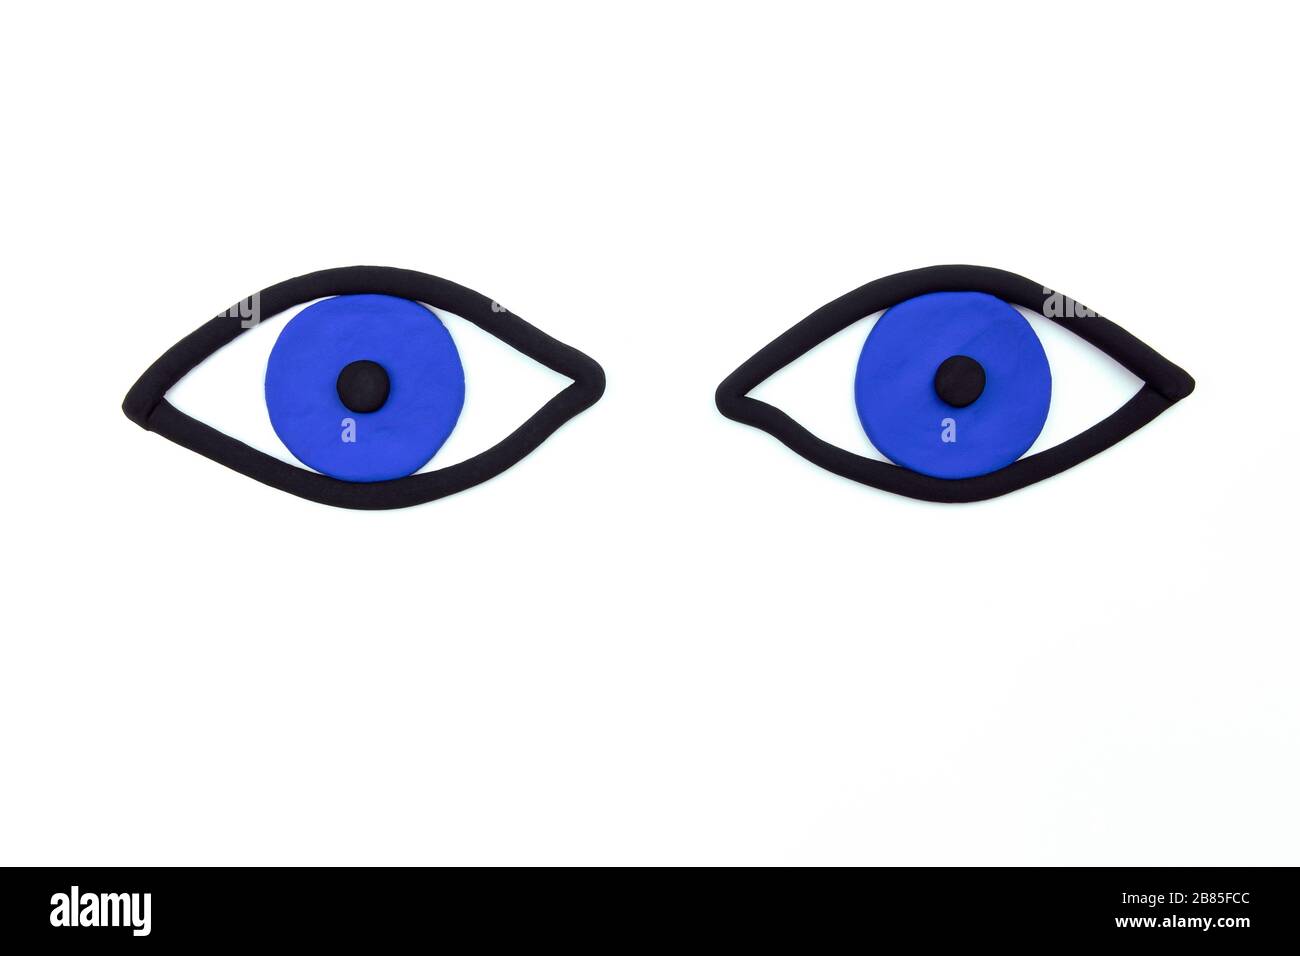 Paar wachende blaue Augen auf weißem Hintergrund. Beobachtungskonzept, flaches Lay Mockup. Augenhintergrund. Stockfoto